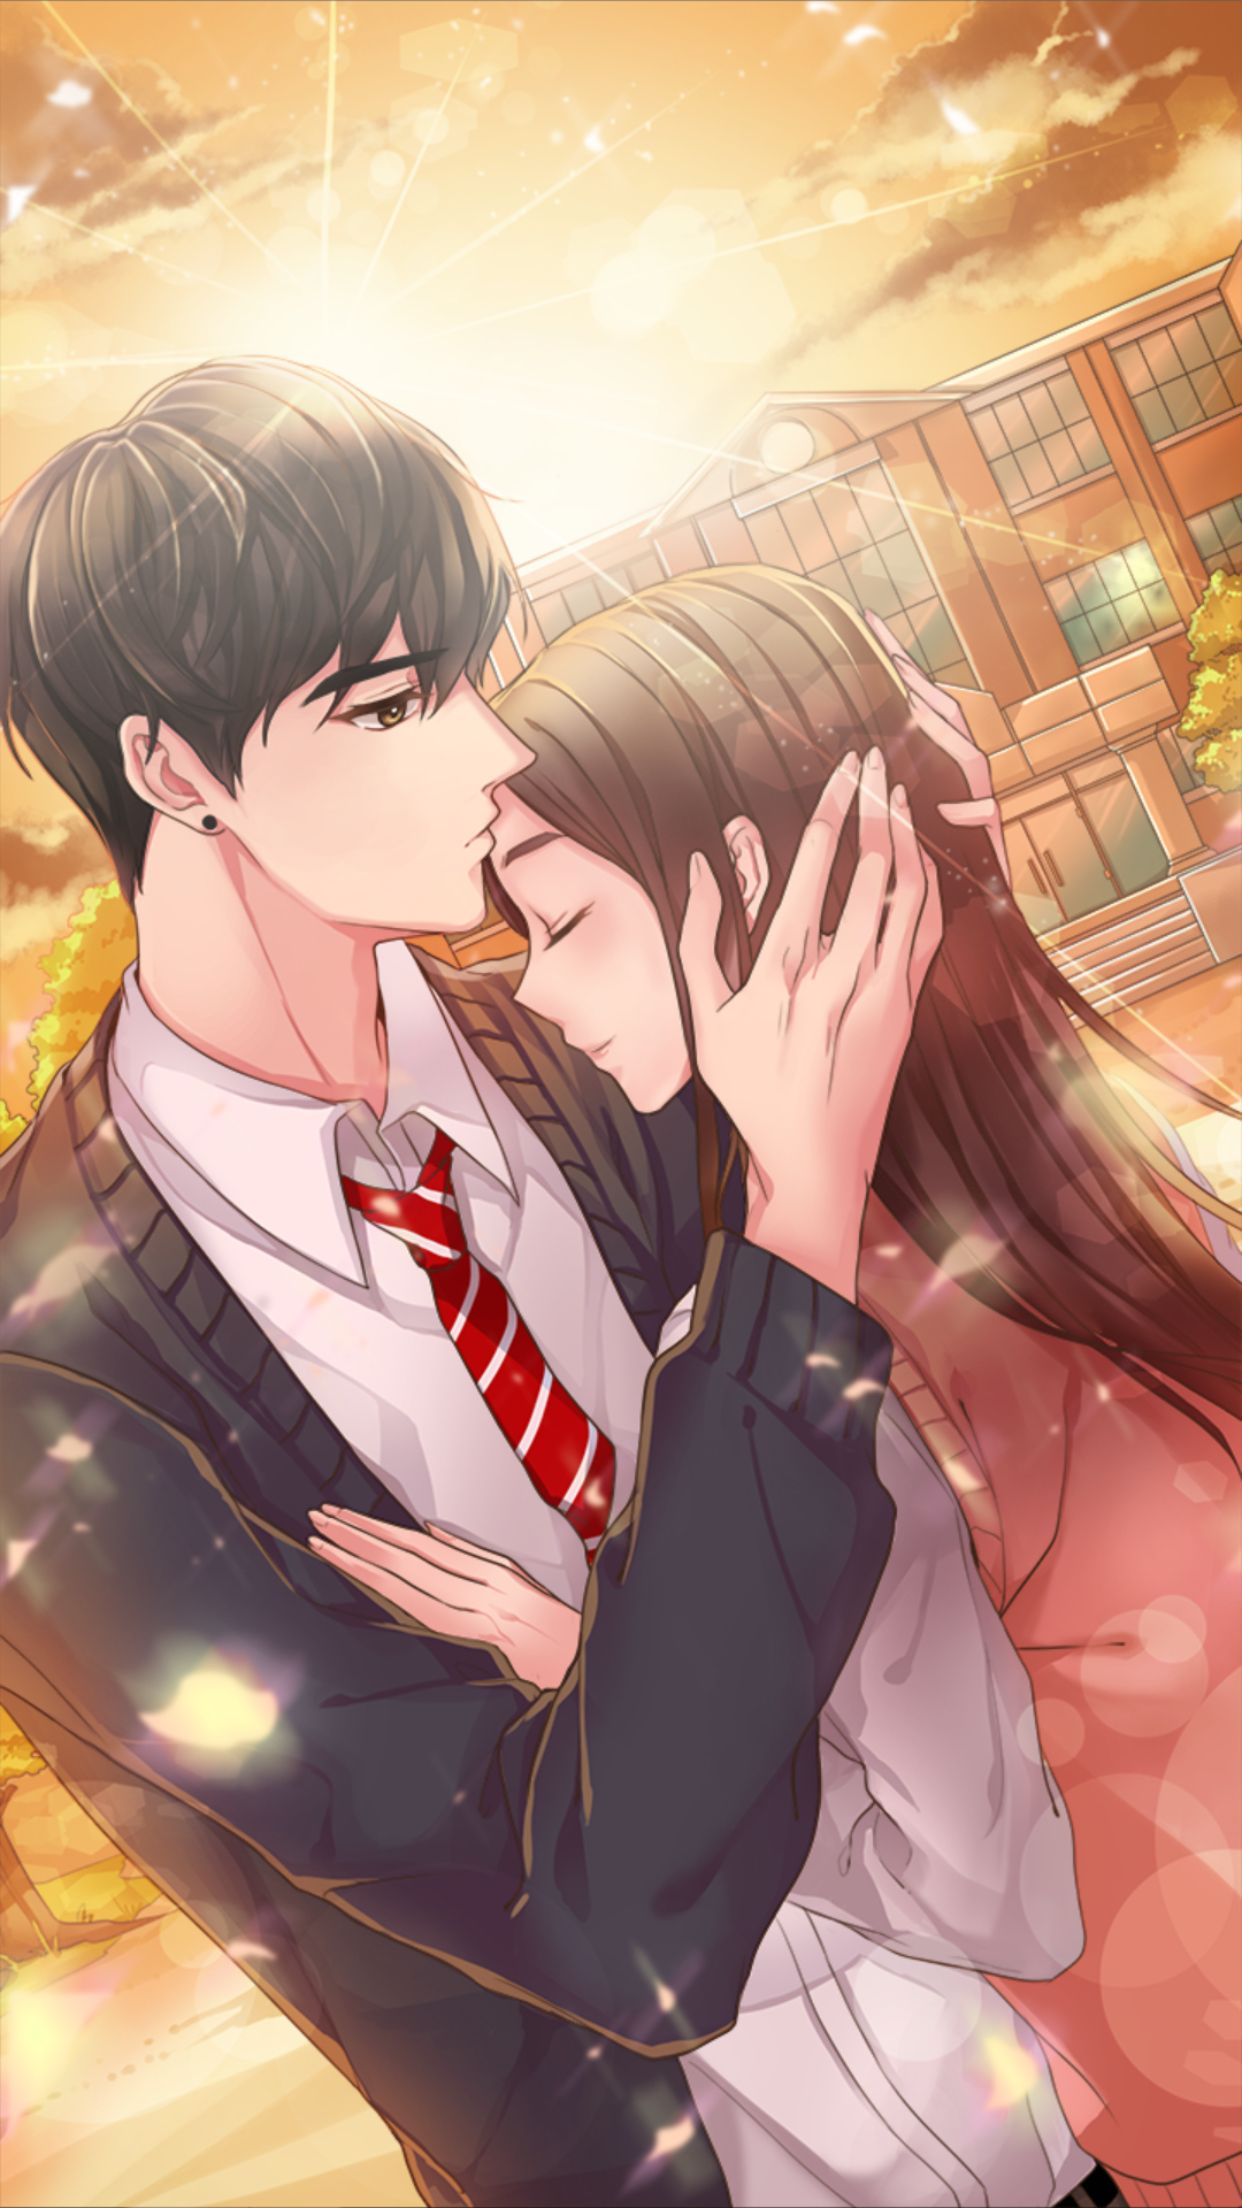 Hình nền Một Cặp đôi Anime đang Hôn Nhau Với Những Cánh Hoa Màu đỏ Chảy ở  Hậu Cảnh, Hình ảnh Tình Yêu Anime Background Vector để tải xuống miễn phí -